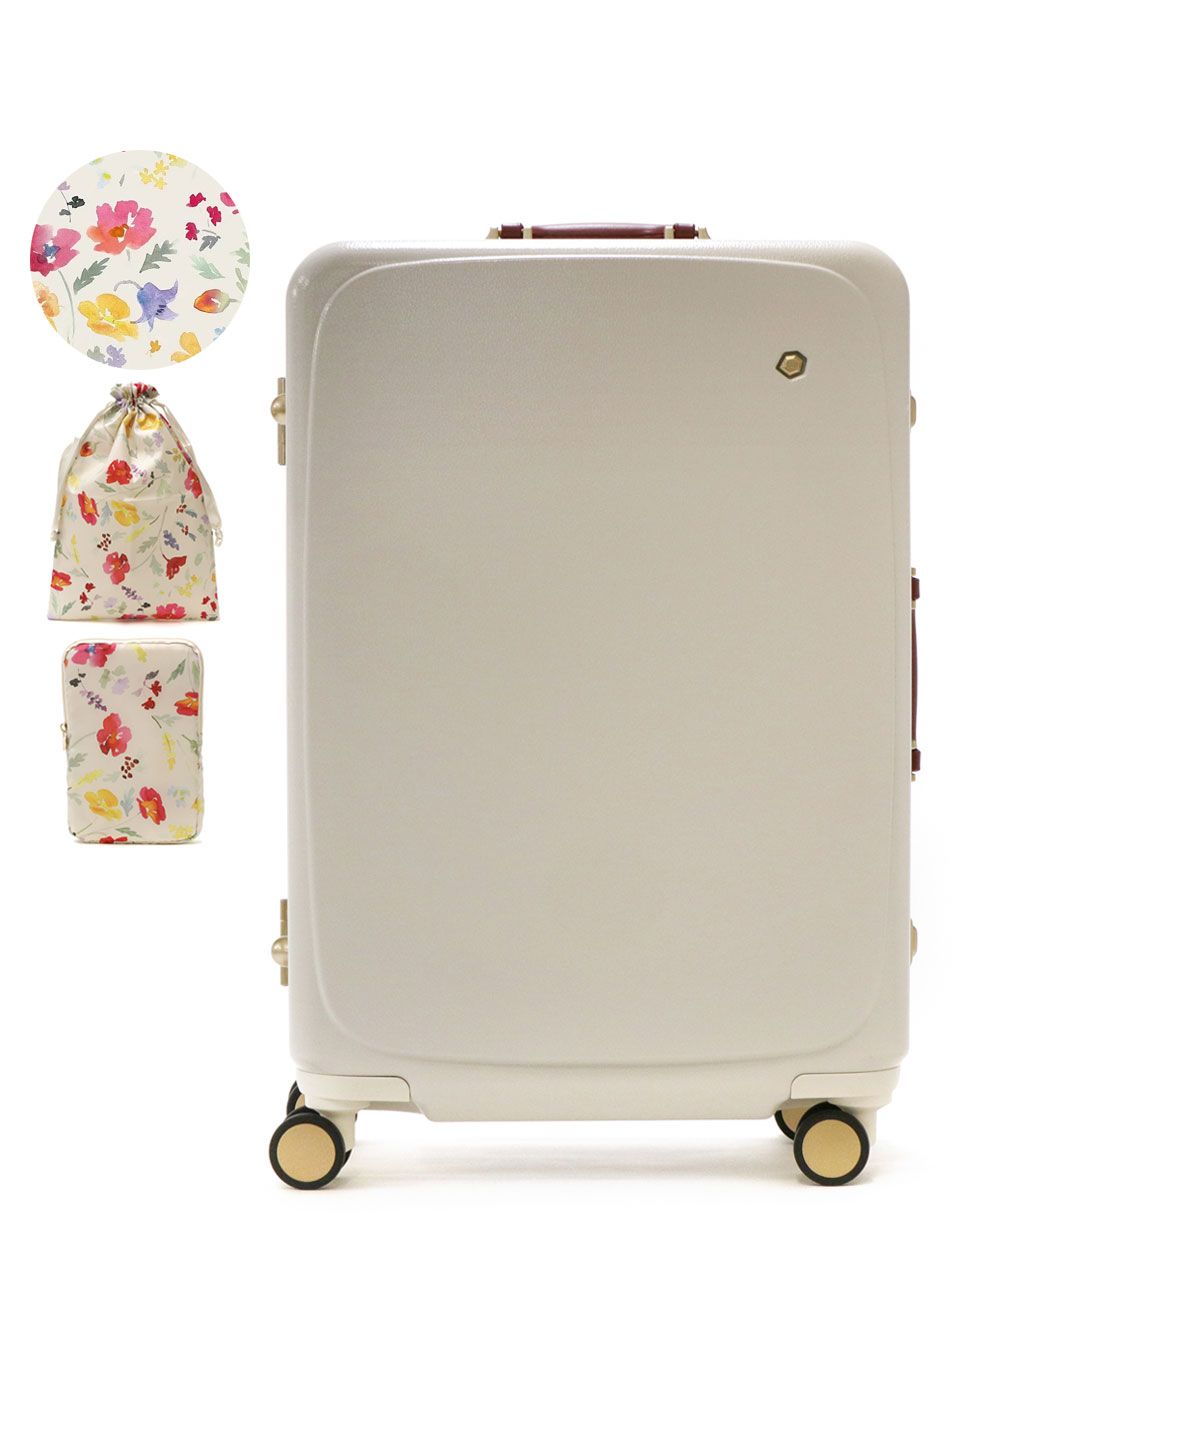 5年保証 ハント スーツケース キャリーケース かわいい 軽量 Mサイズ